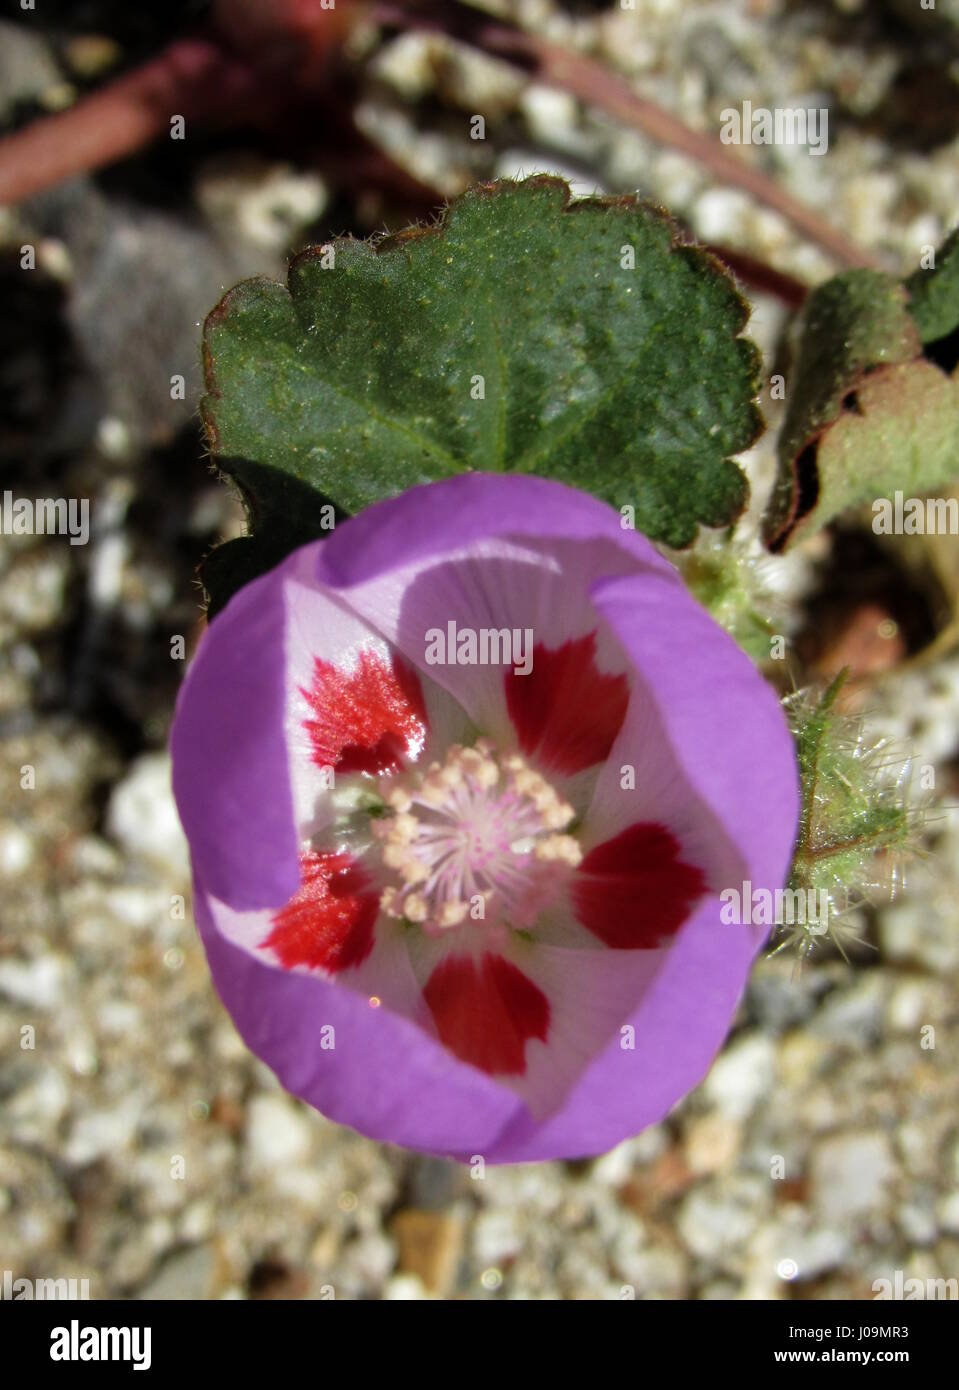 5-spot désert - Eremalche rotudiflora fleur pourpre avec des taches rouge Fleur du désert de Californie du Sud Banque D'Images